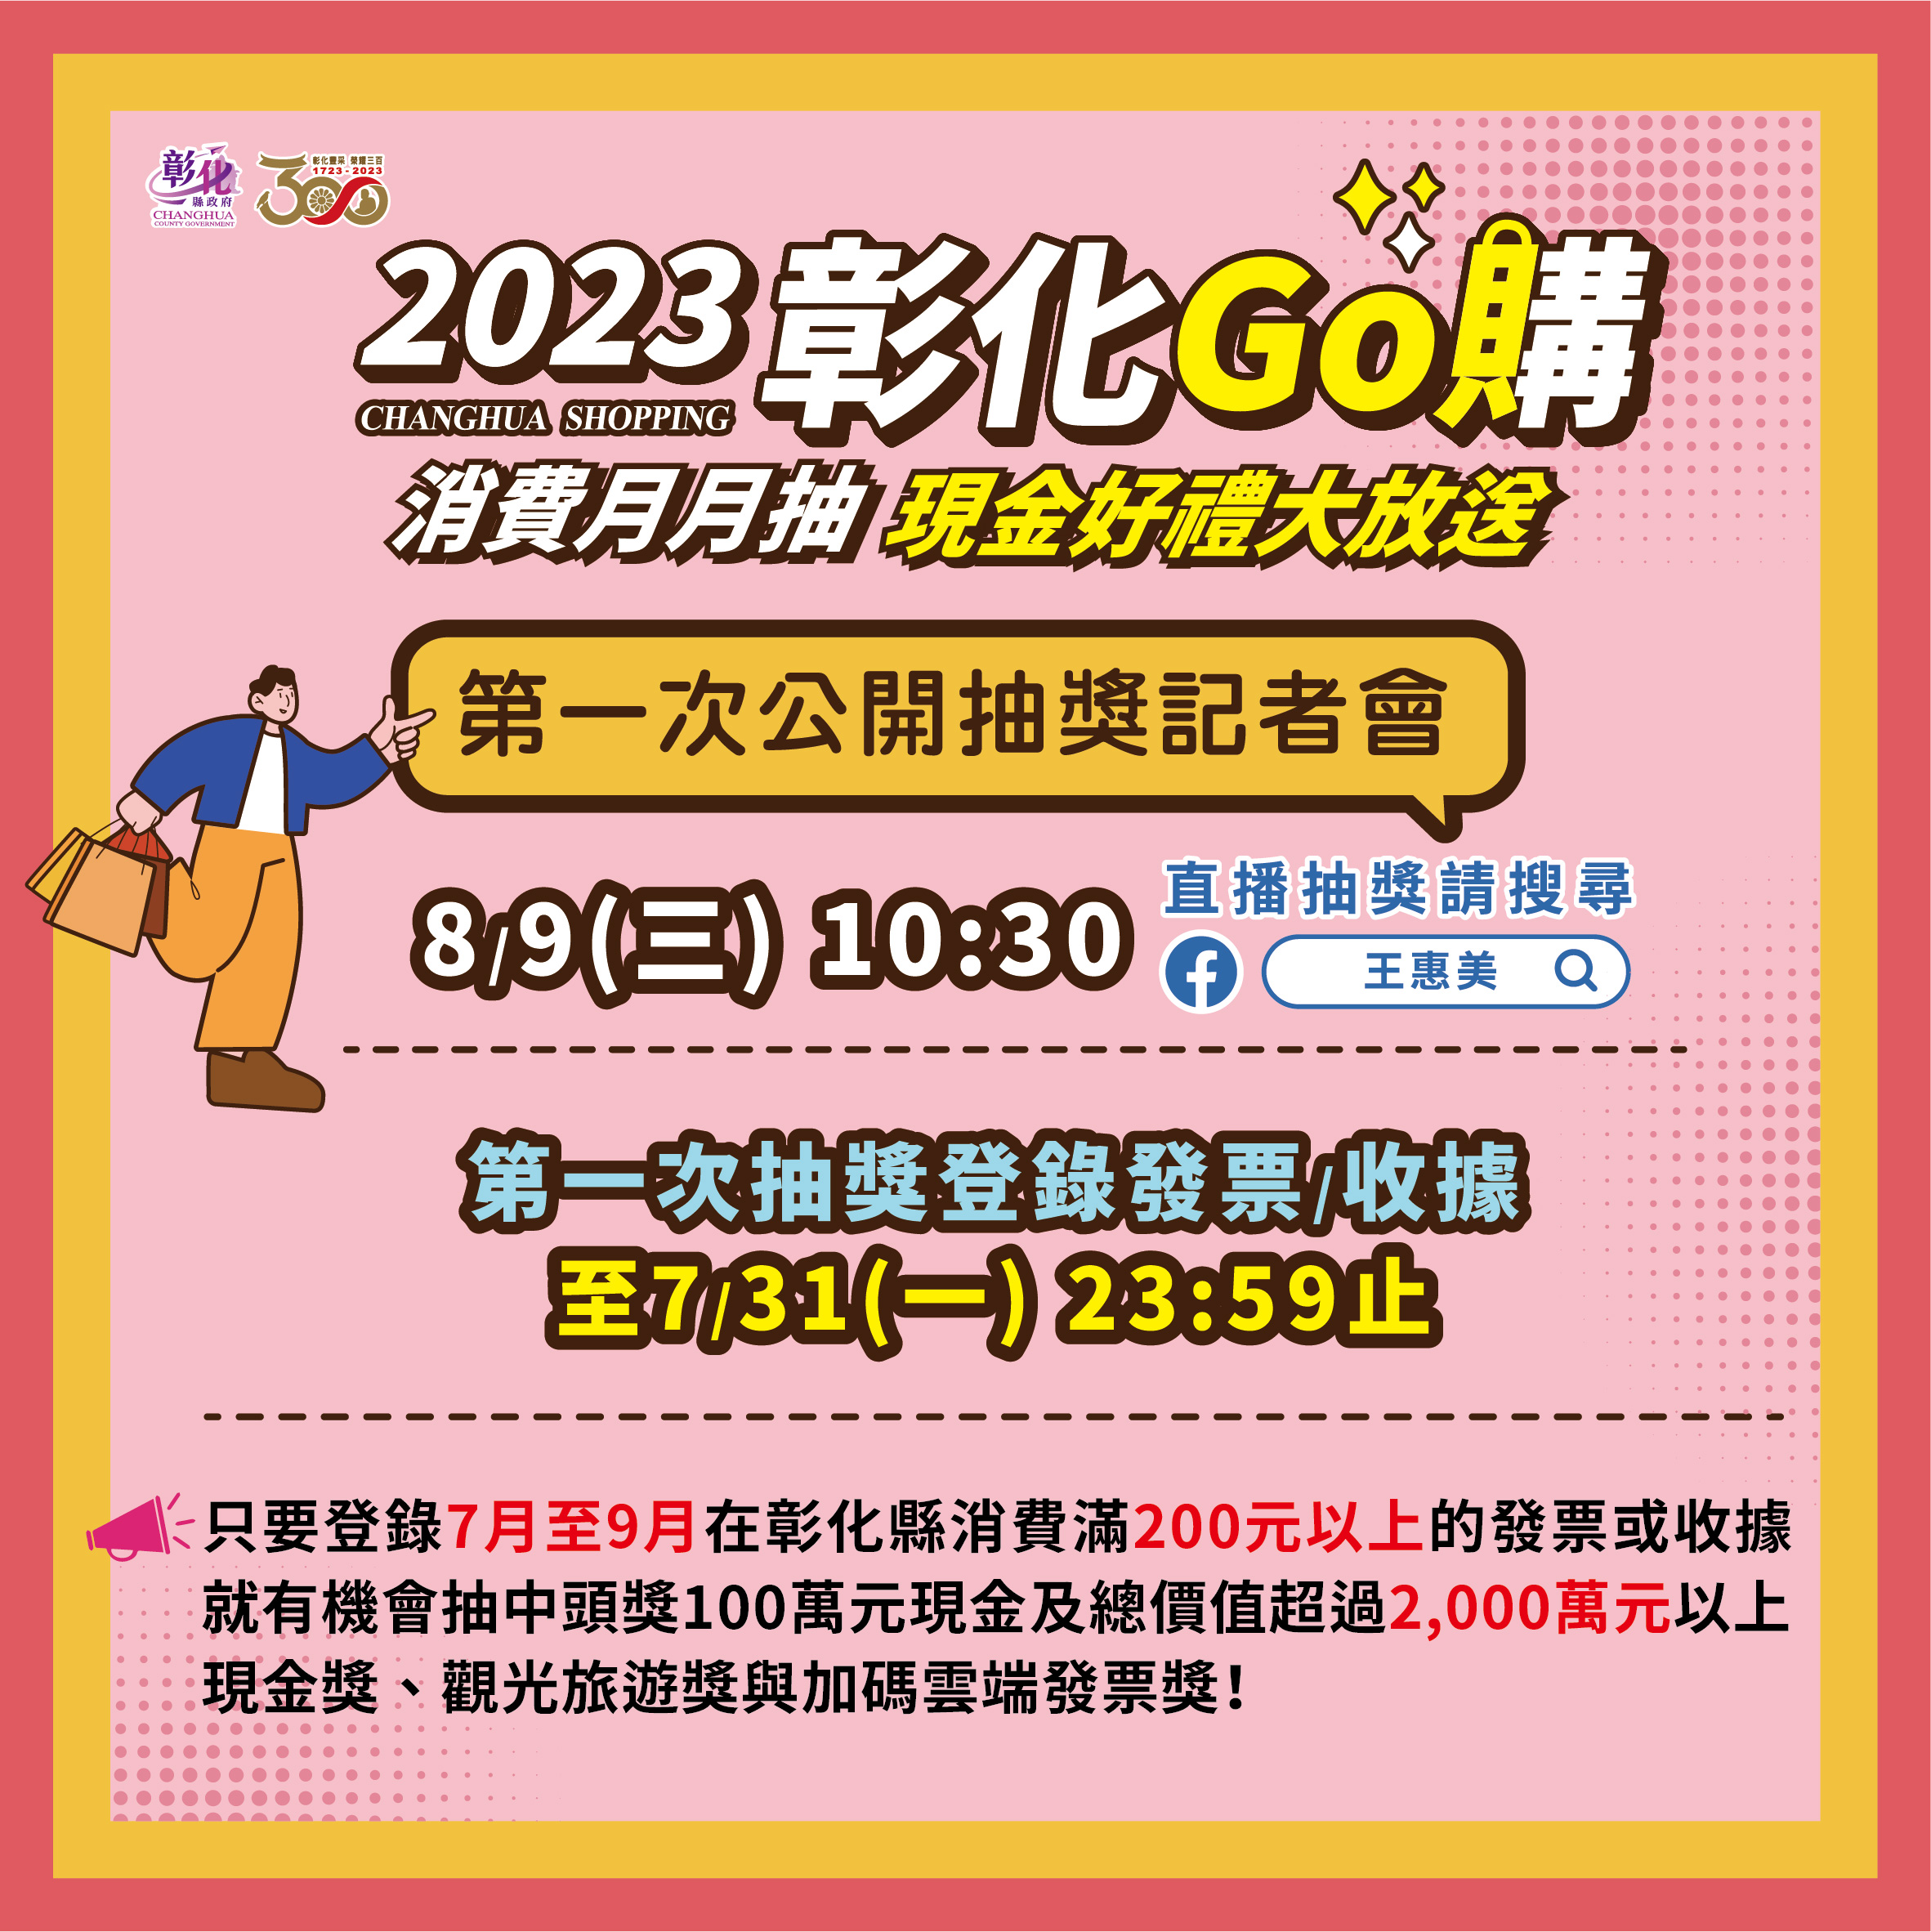 「2023彰化GO購」消費抽獎活動 112年8月9日(三)第一次直播抽獎倒數中